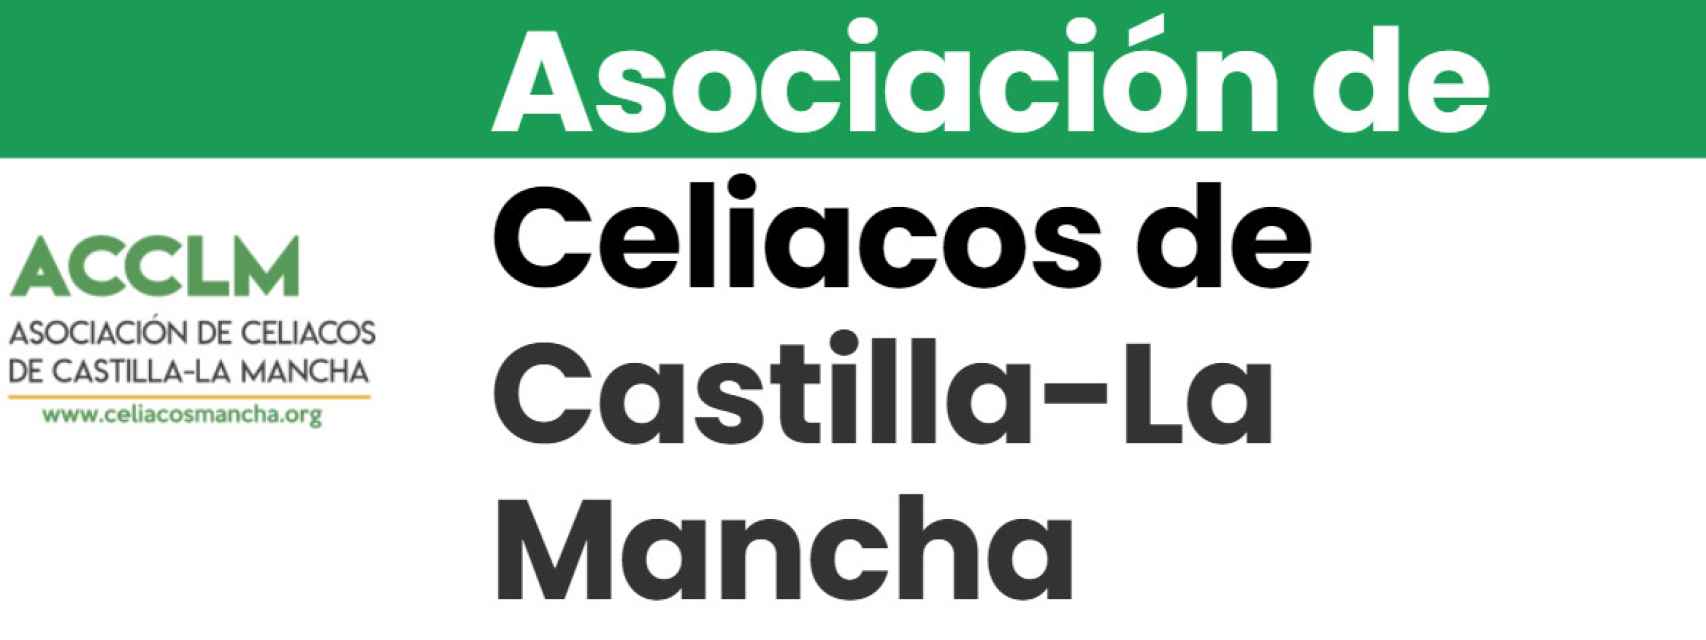 Los celiacos de Castilla-La Mancha consideran deficiente la ayuda del Gobierno regional.